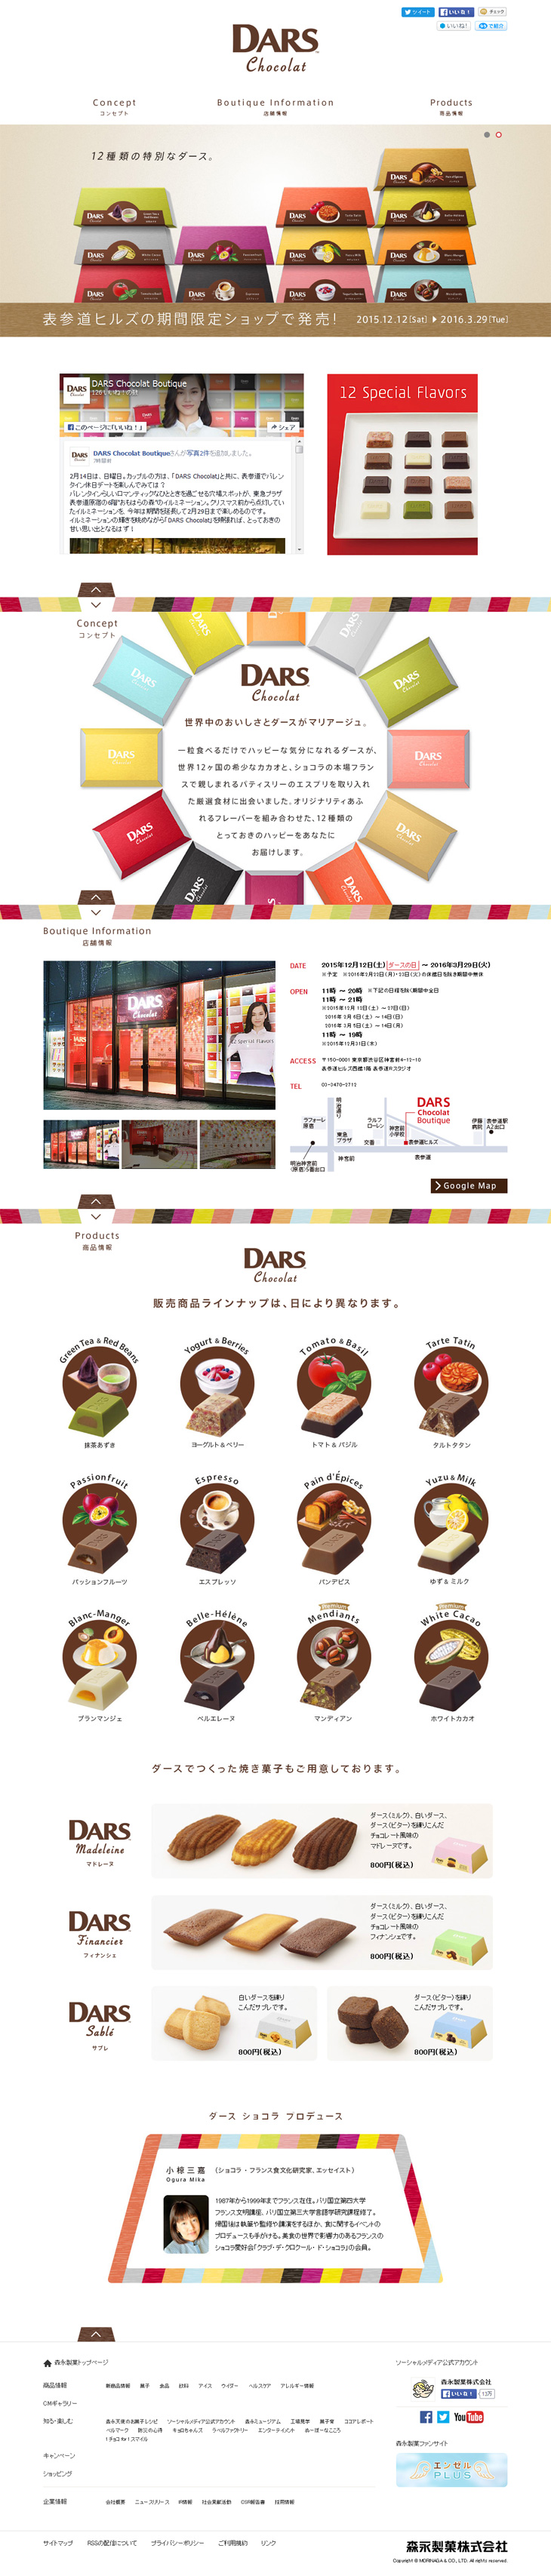 DARS Chocolat Boutique_pc_1